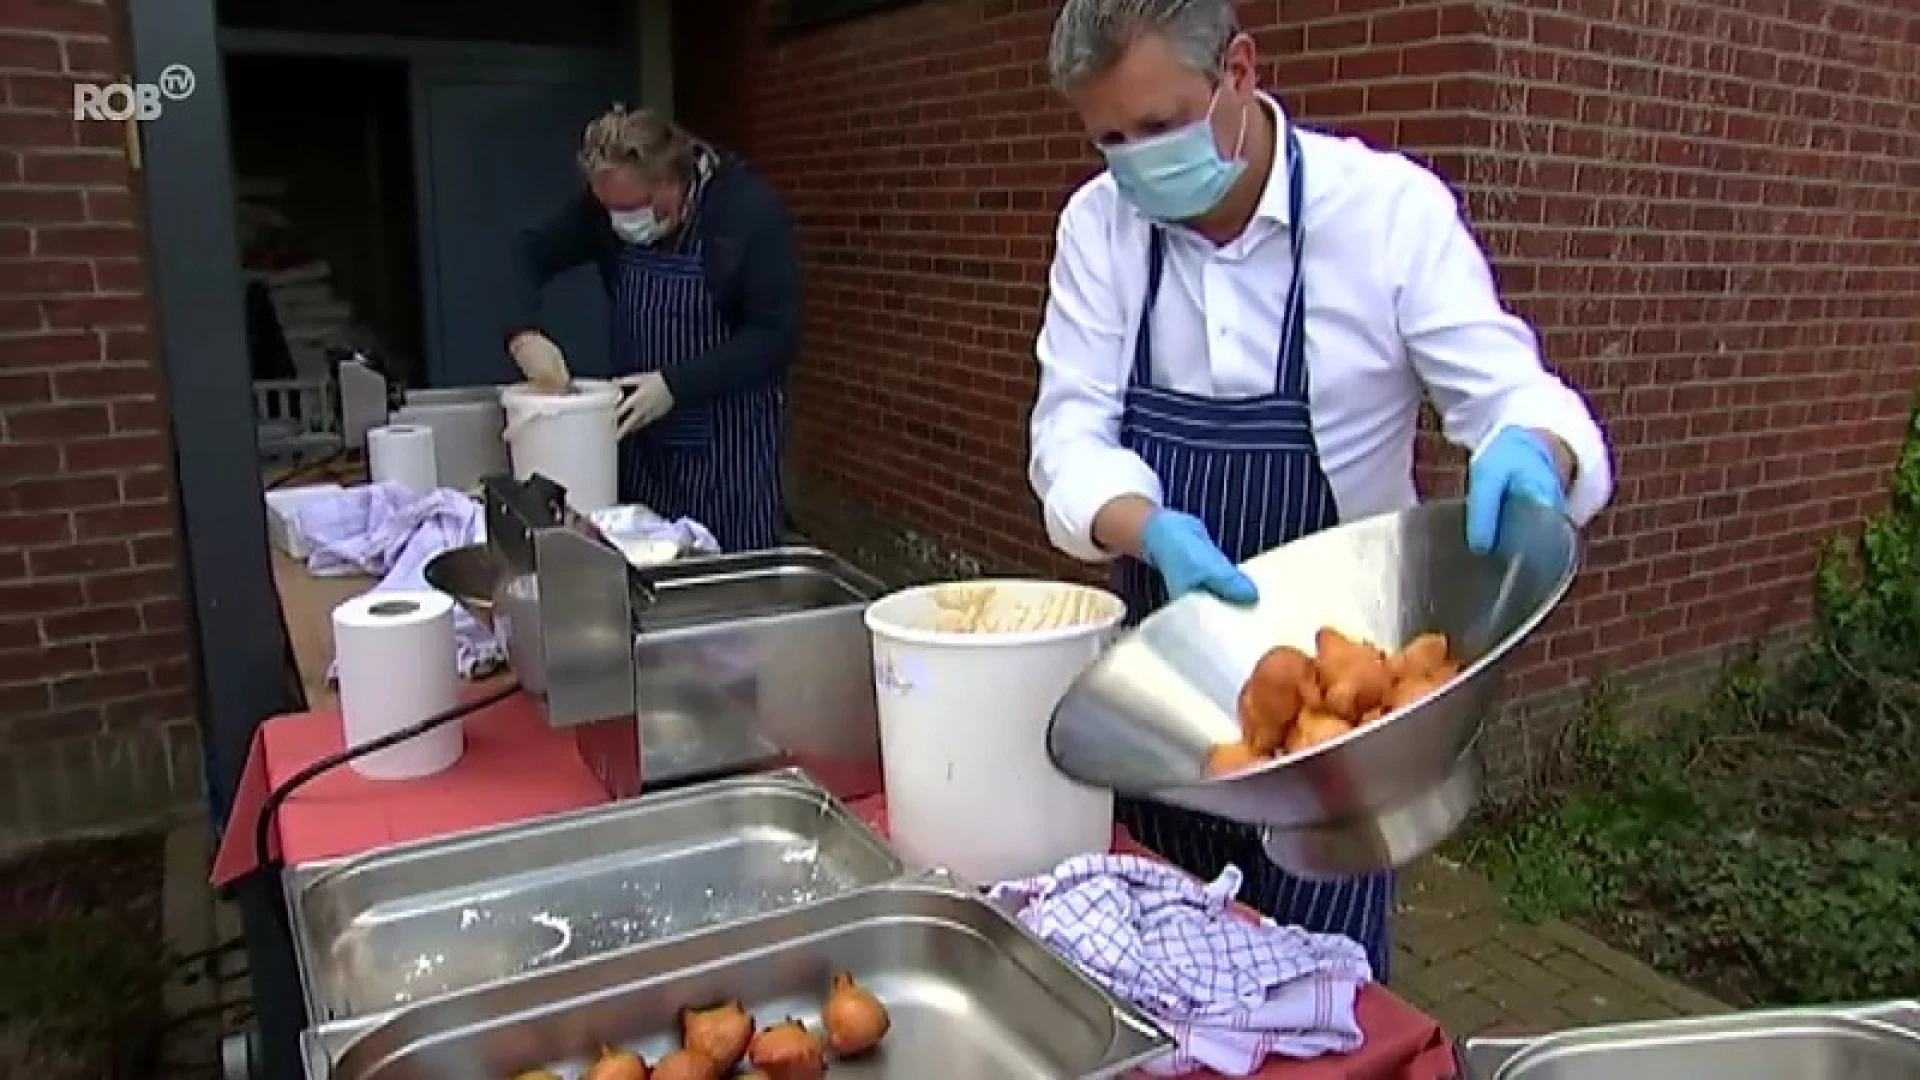 Restaurant De Brug trakteert rusthuisbewoners op smoutebollen